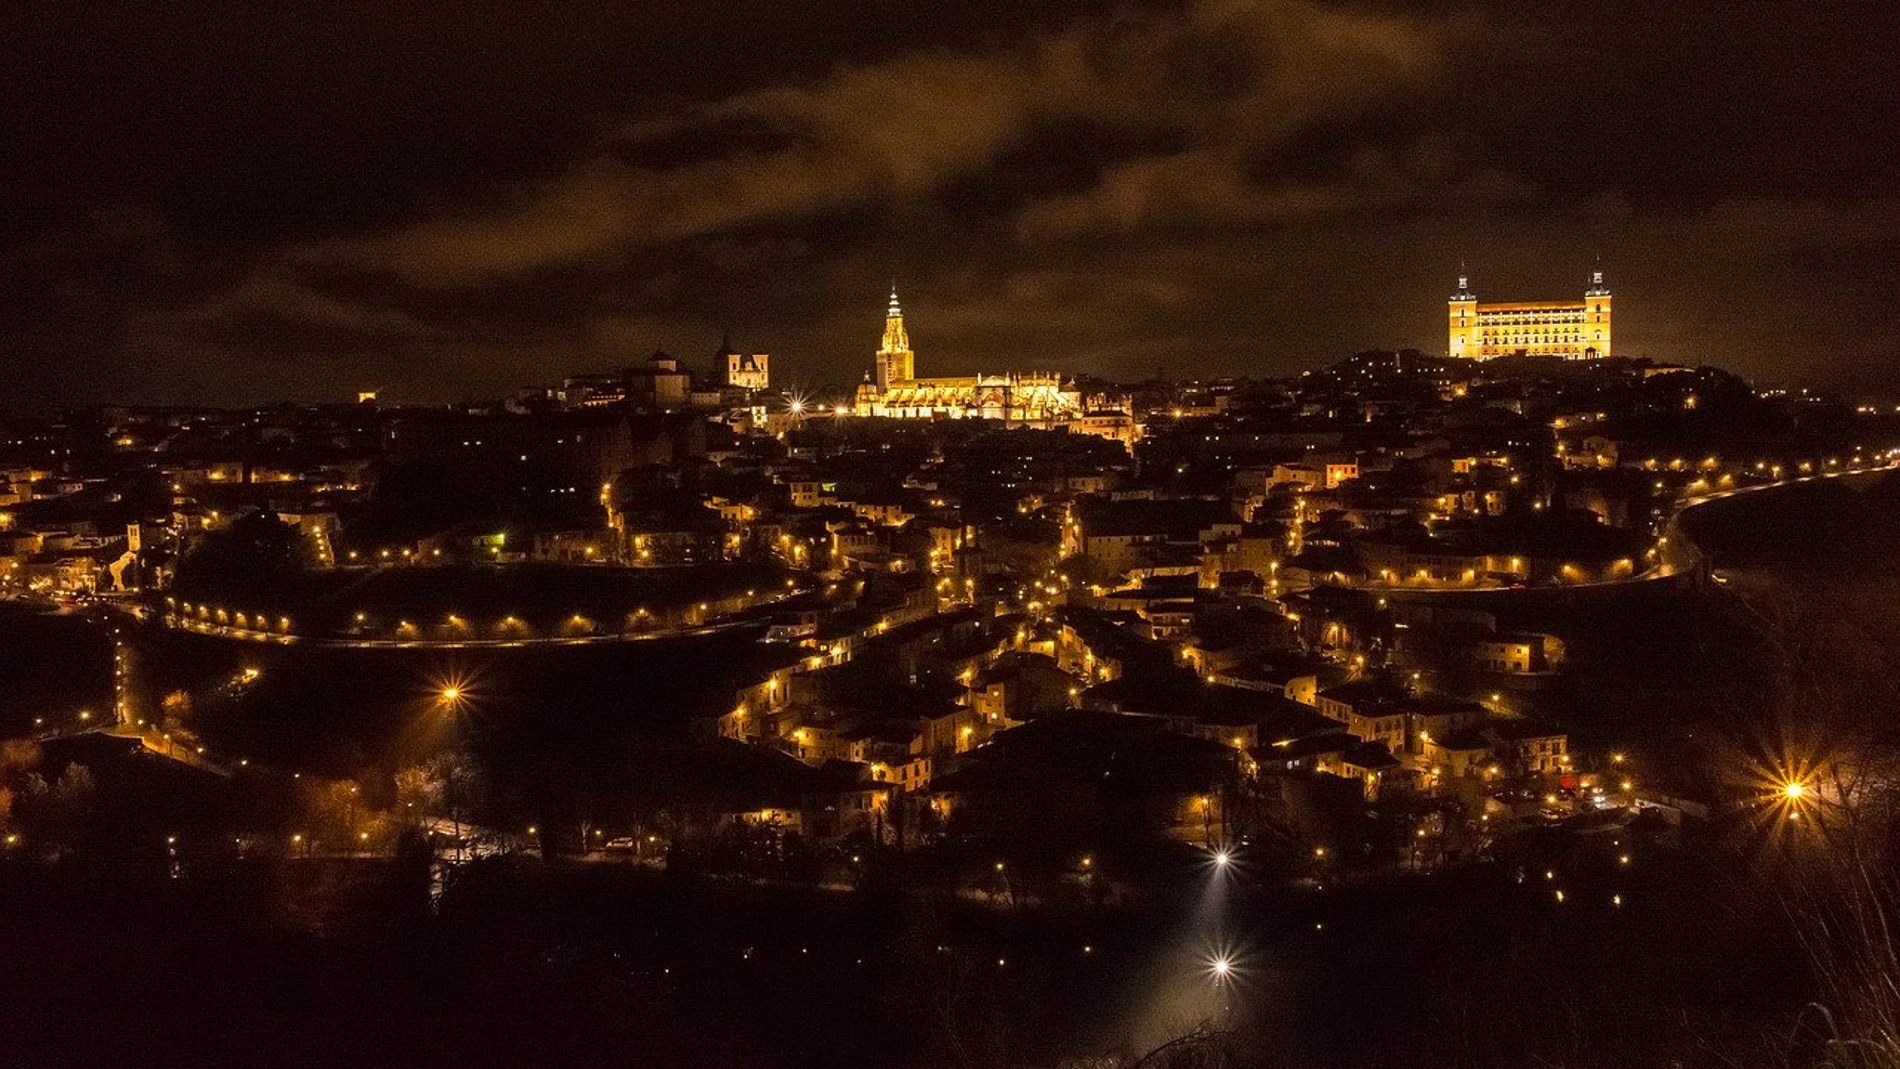 Toledo iluminada durante la noche.